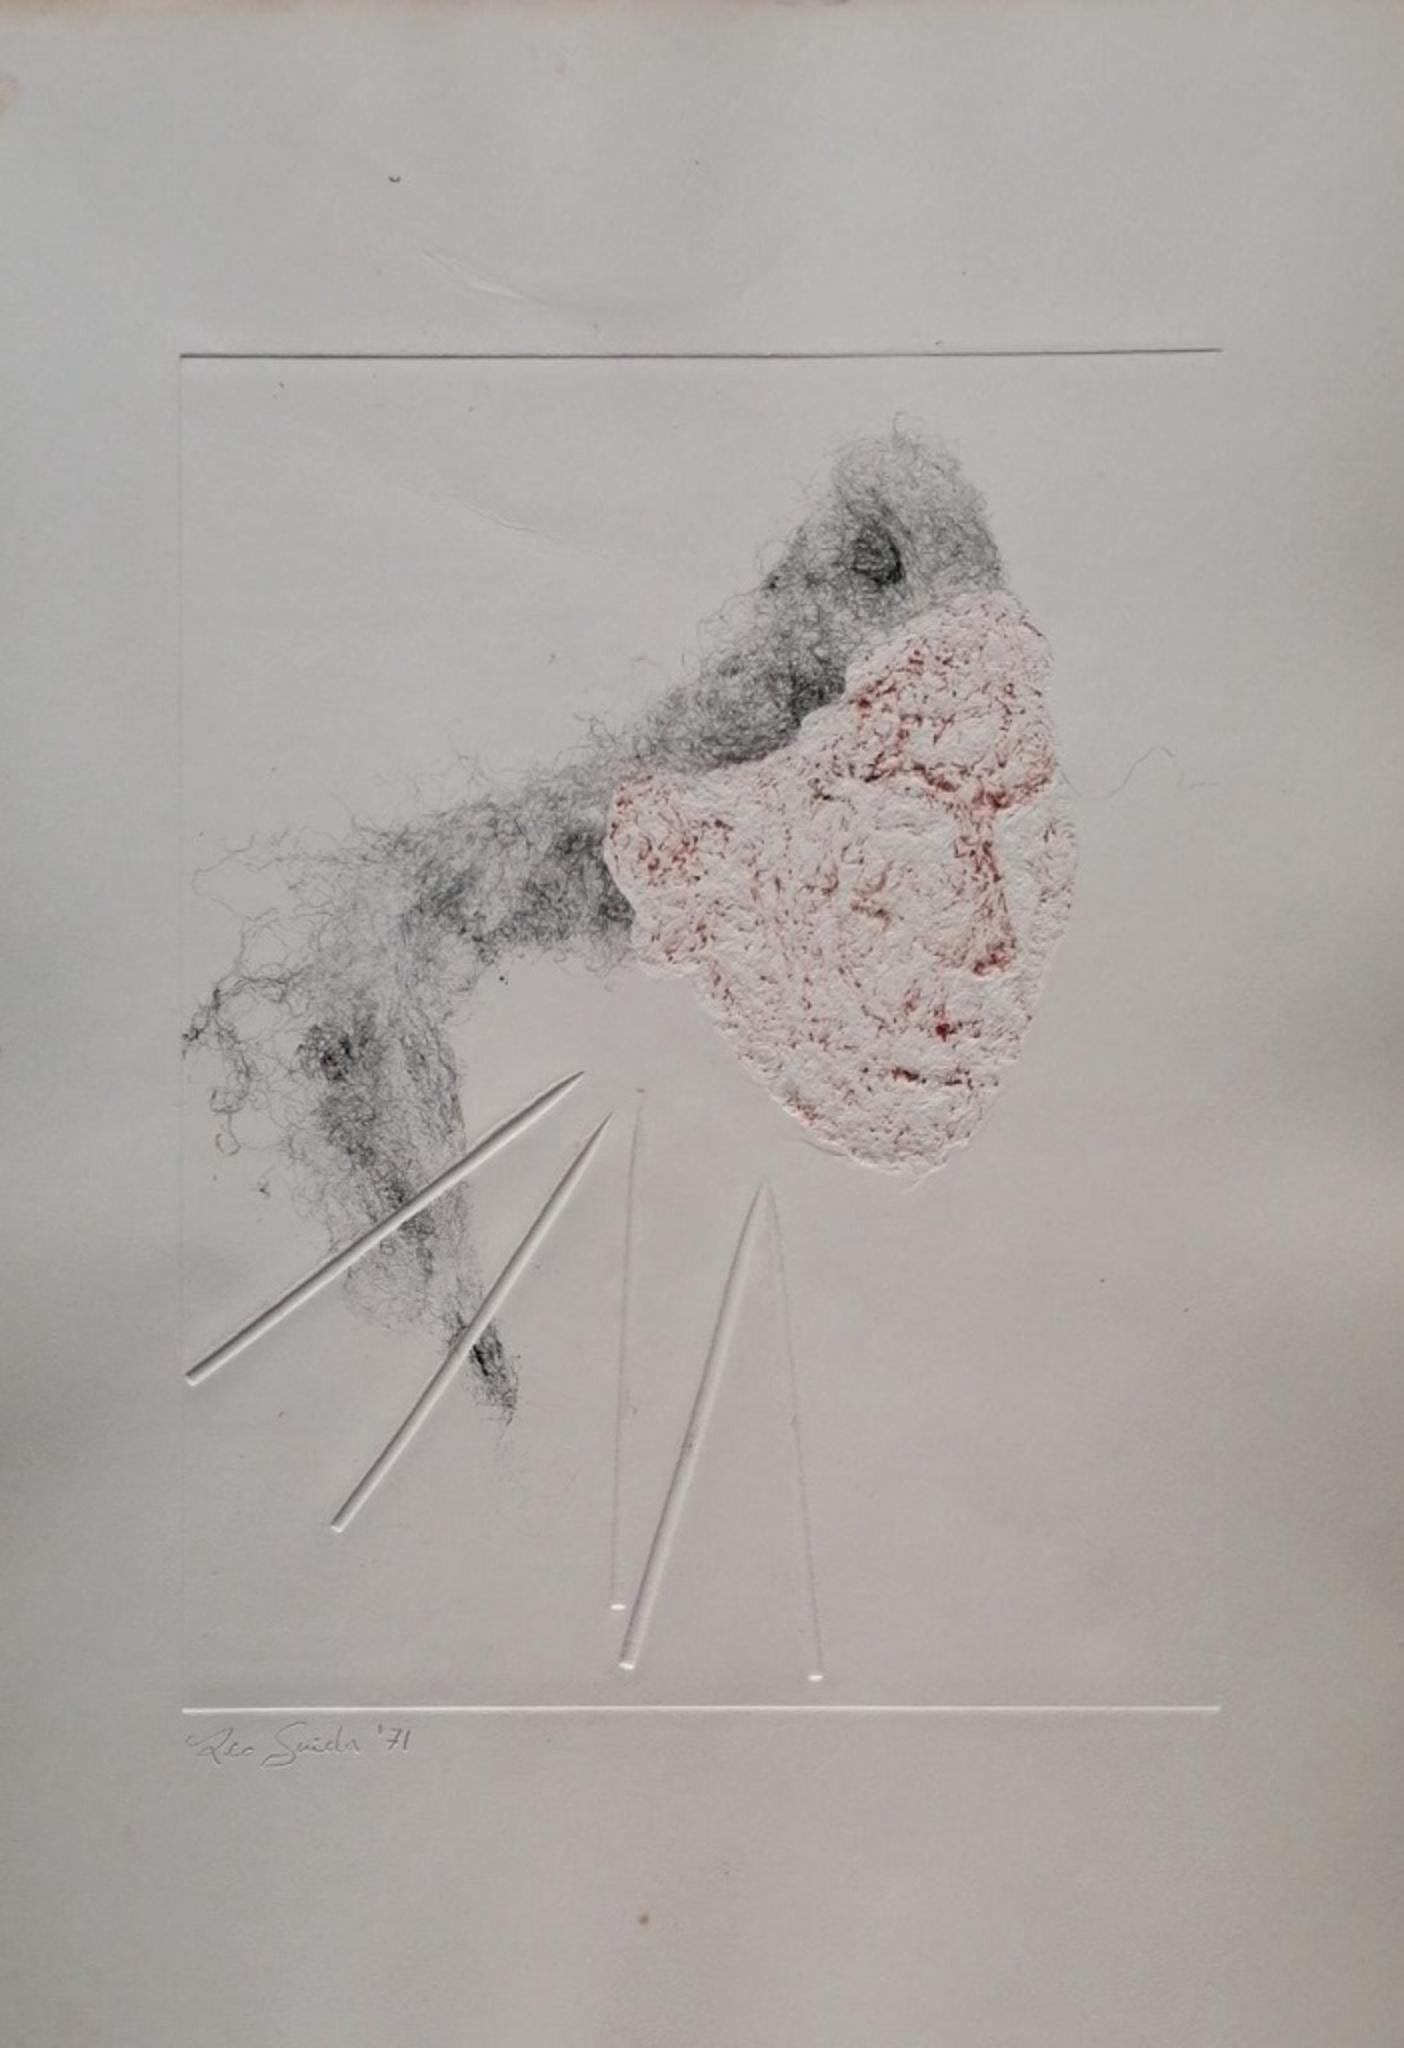 Abstract Composition ist ein originales zeitgenössisches Kunstwerk, das 1971 in Italien von dem italienischen Künstler Leo Guida geschaffen wurde.

Original Radierung und Leimfarben auf Papier. Vom Künstler mit Bleistift in der unteren linken Ecke